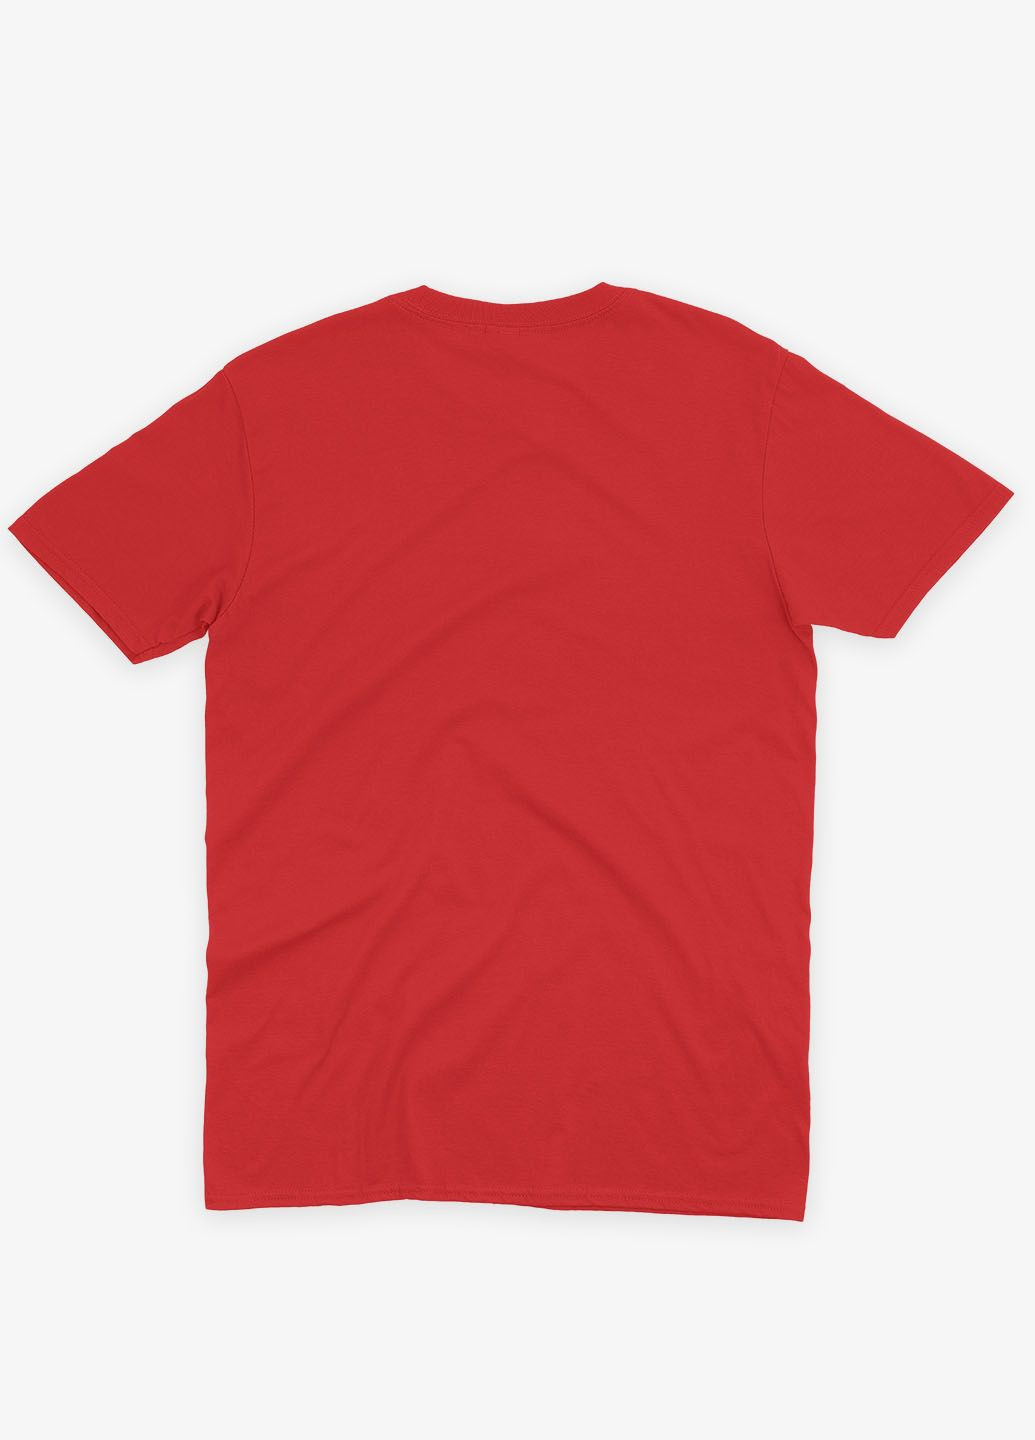 Красная демисезонная футболка для мальчика с принтом антигероя - дедпул (ts001-1-sre-006-015-030-b) Modno